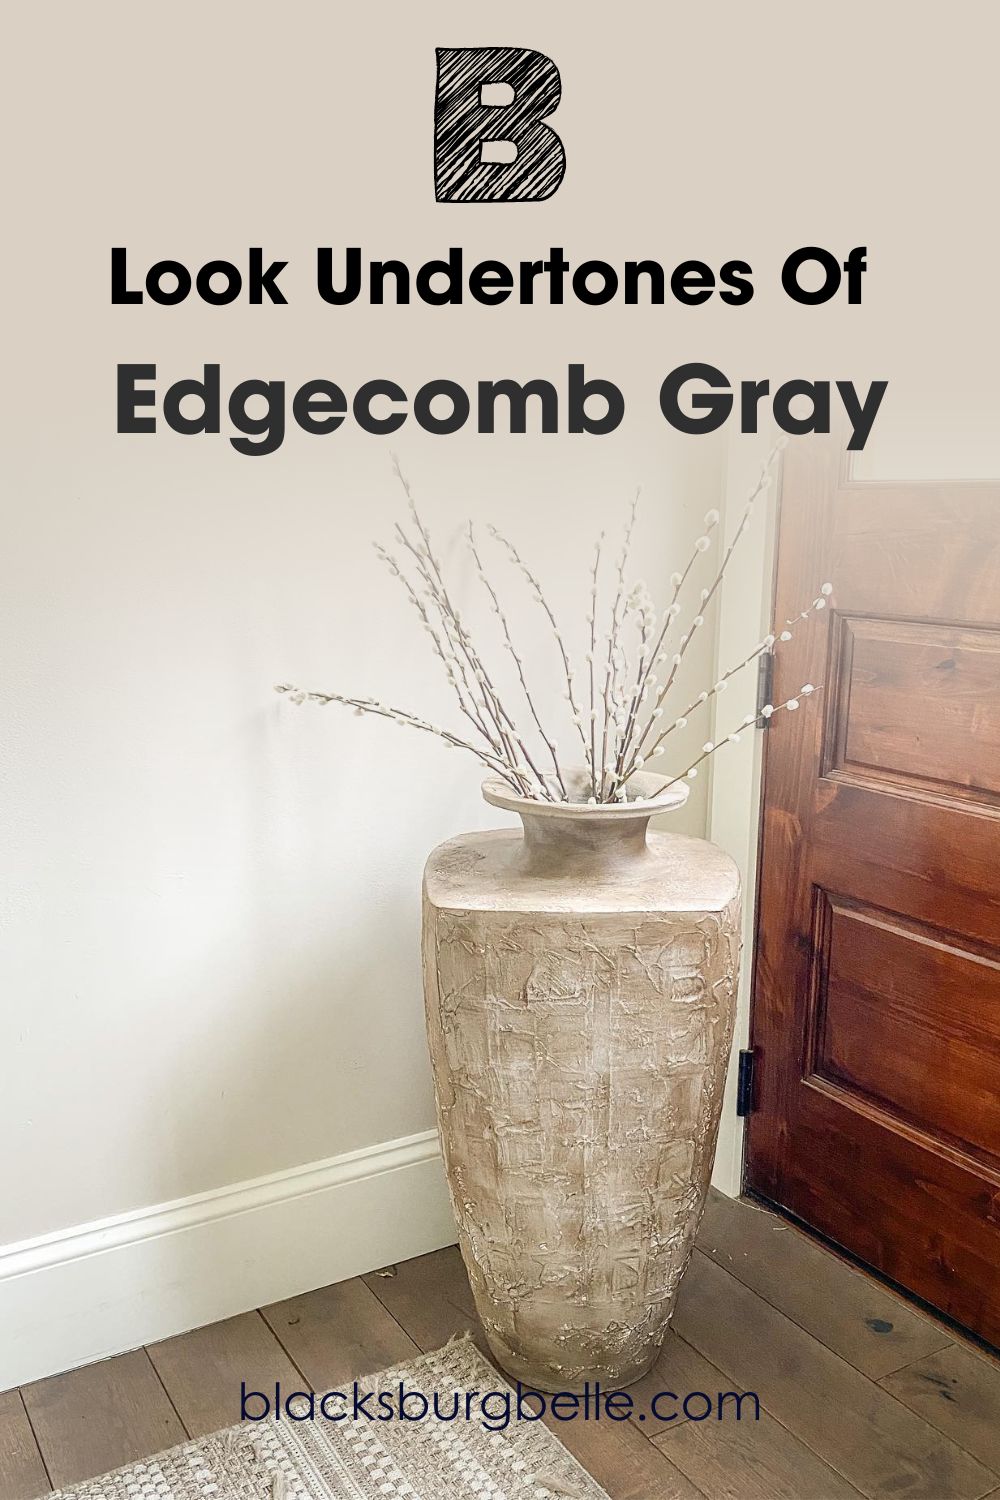 Look Undertones Of Edgecomb Gray